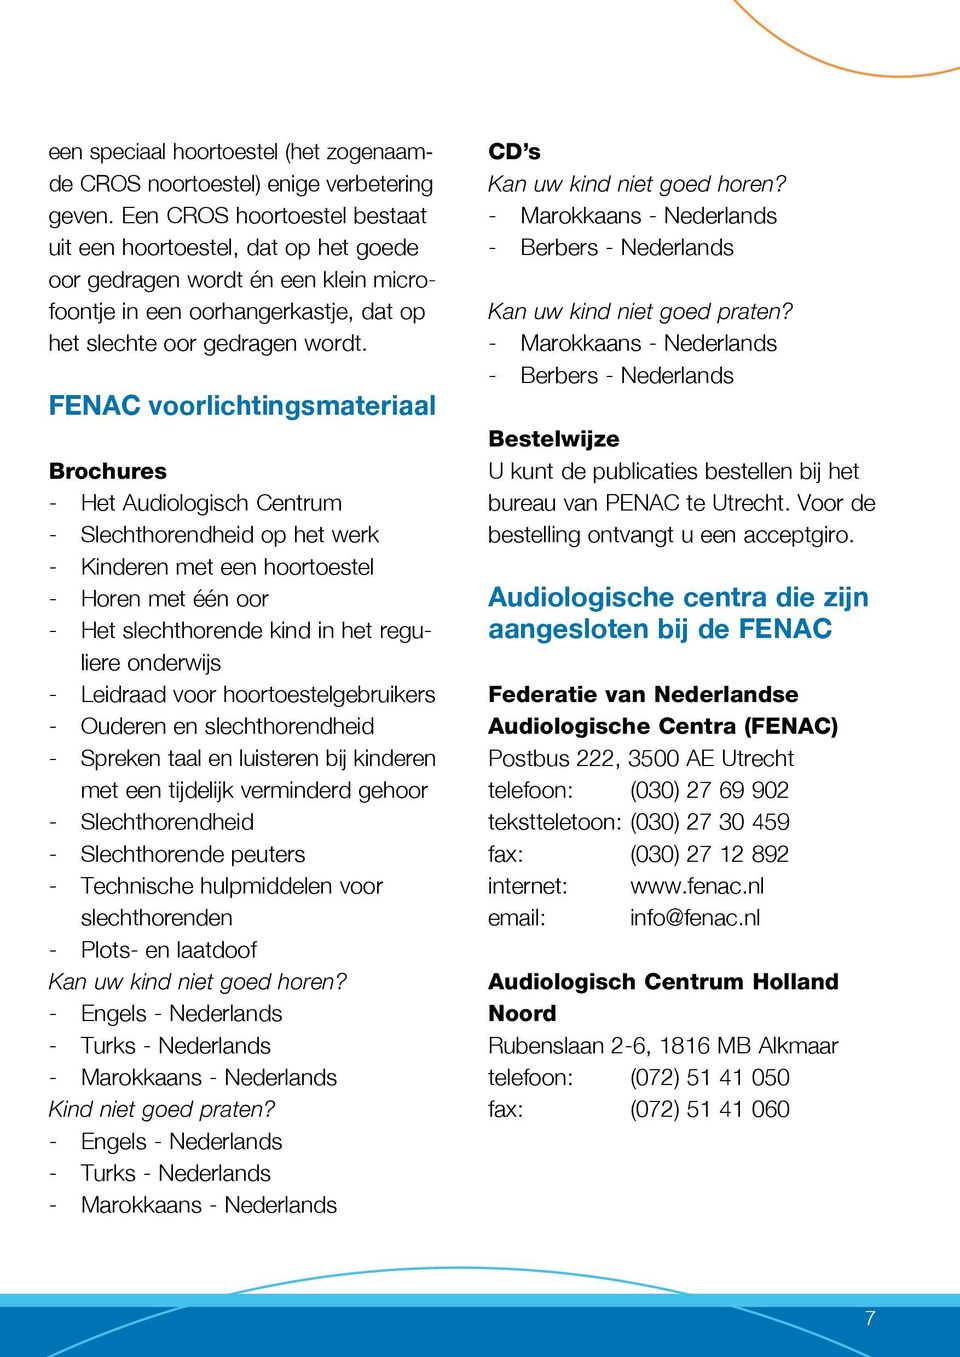 FENAC voorlichtingsmateriaal Brochures - Het Audiologisch Centrum - Slechthorendheid op het werk - Kinderen met een hoortoestel - Horen met één oor - Het slechthorende kind in het reguliere onderwijs